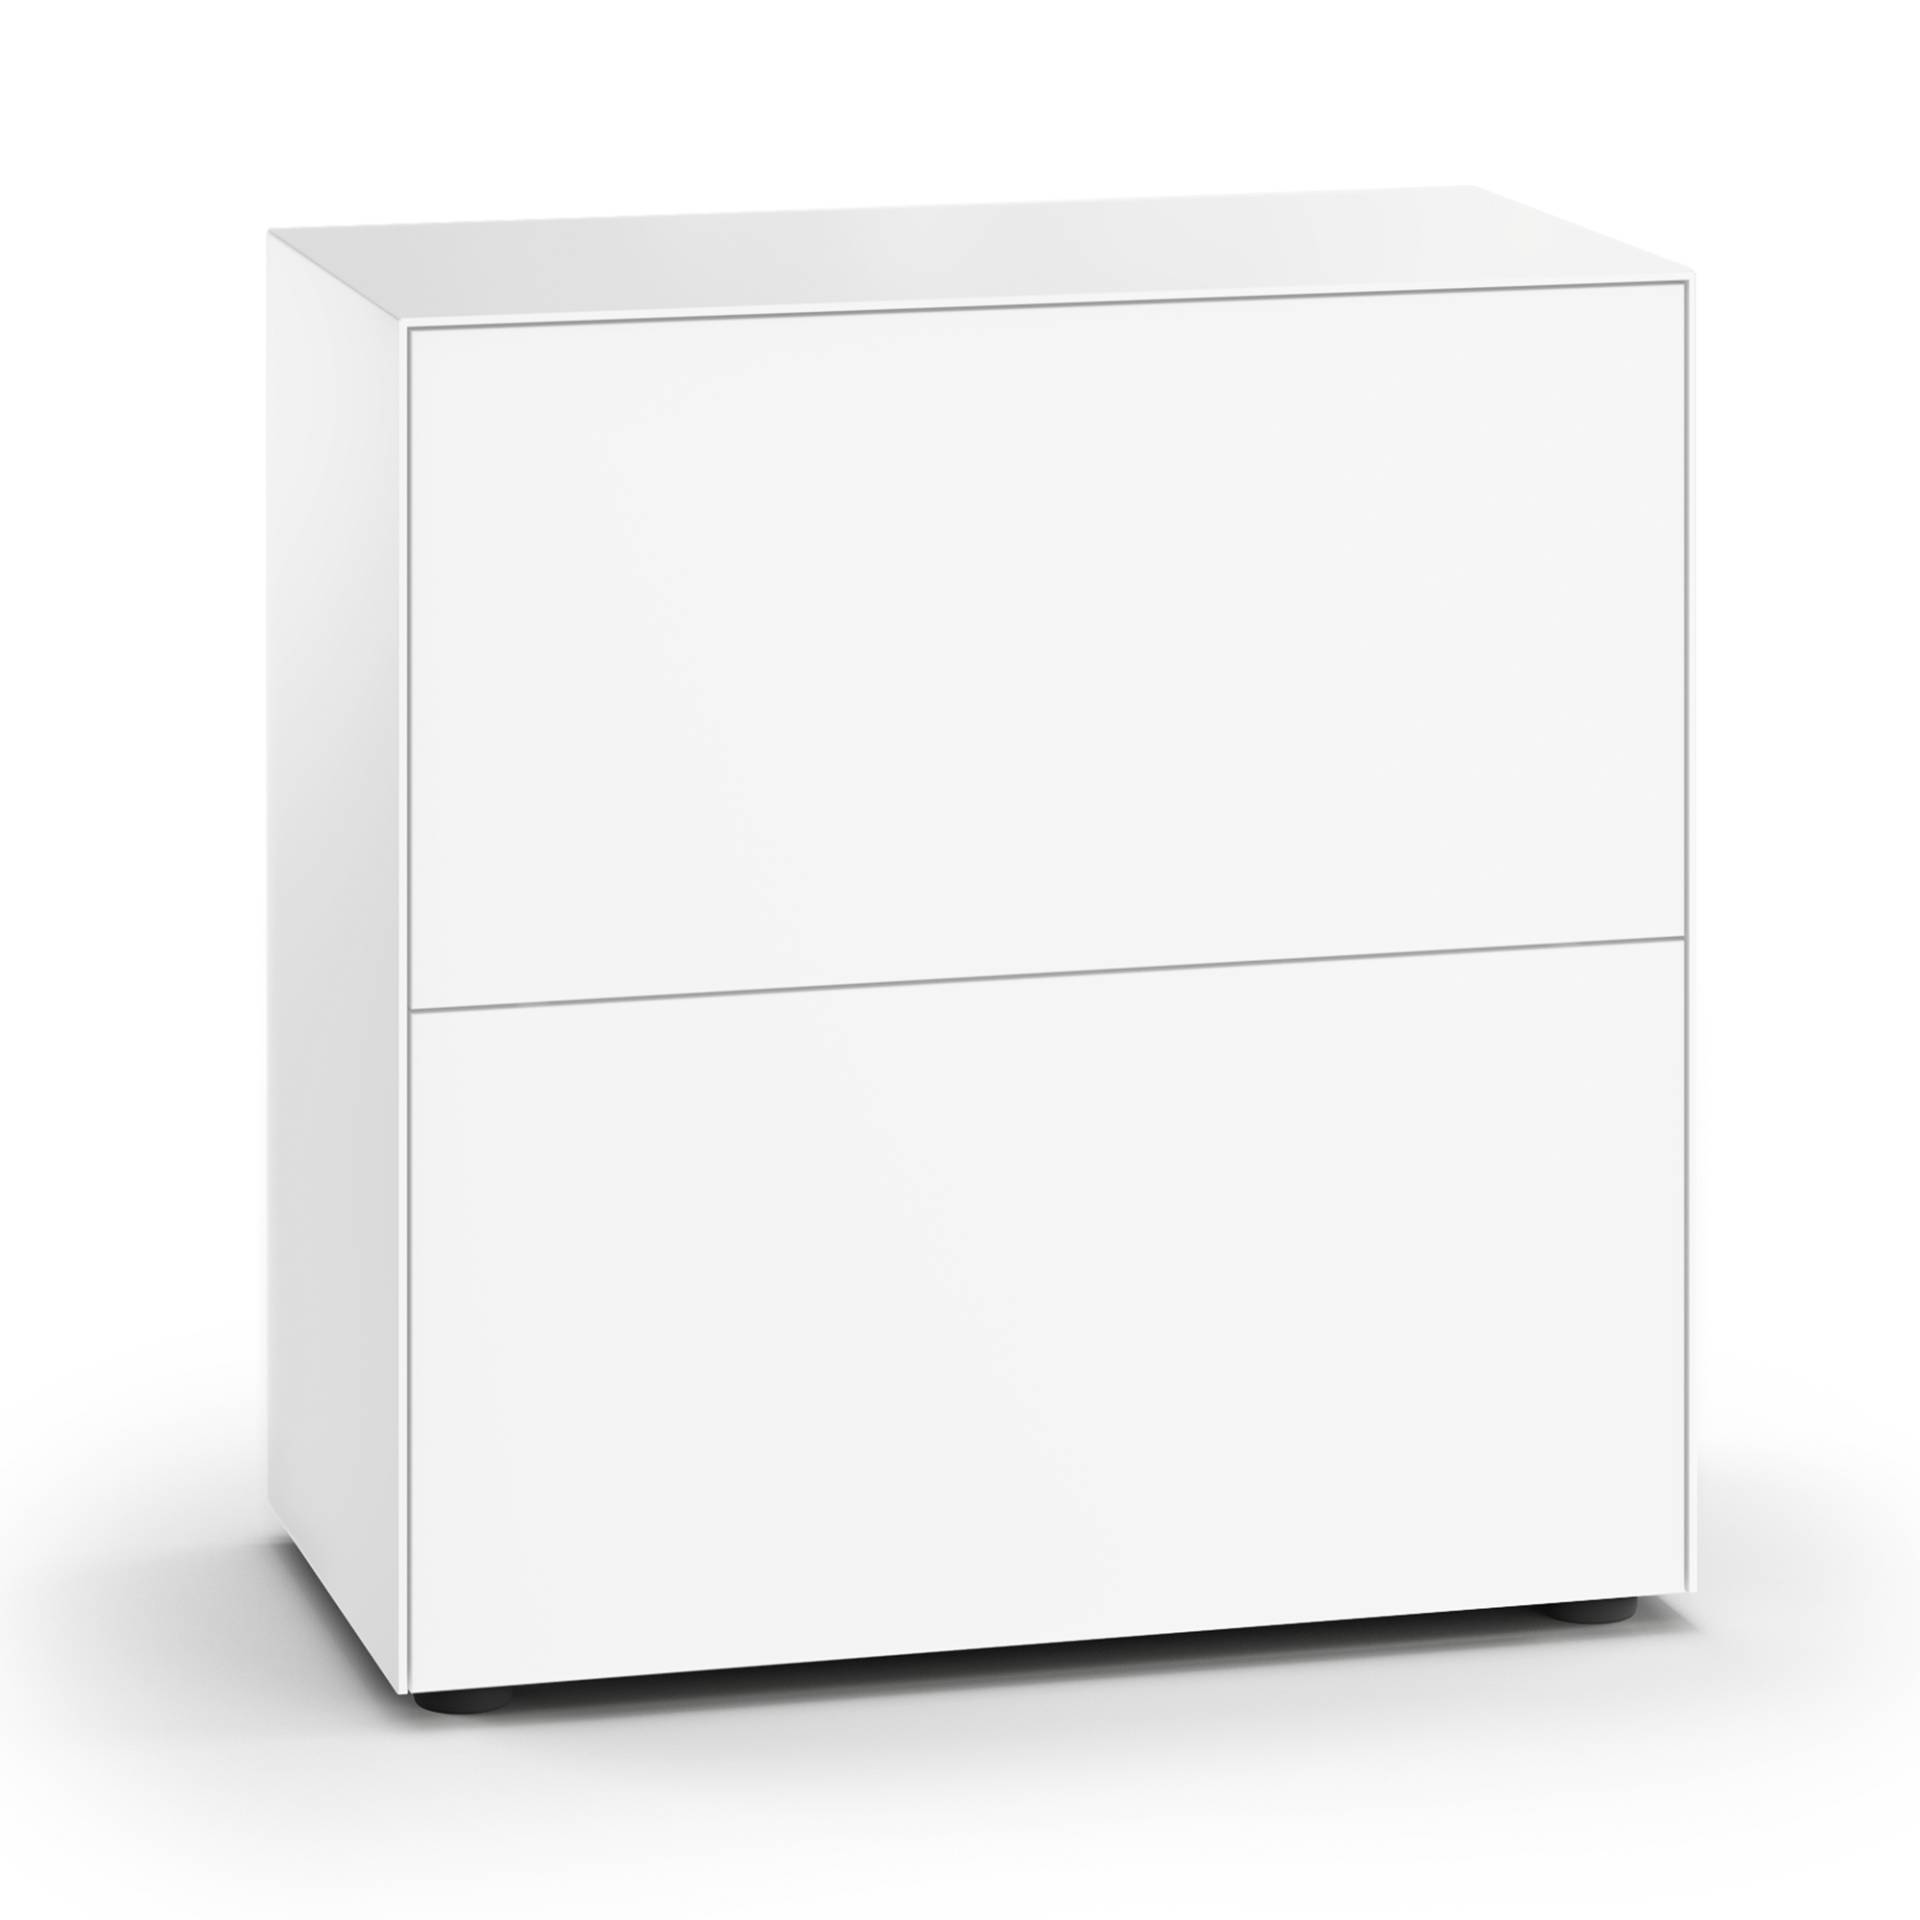 Piure - Nex Pur Office Klapptürbox 75x40x75cm - weiß RAL 9016/MDF matt lackiert/mit Gleitfüßen H 3cm/1 Fachboden von Piure